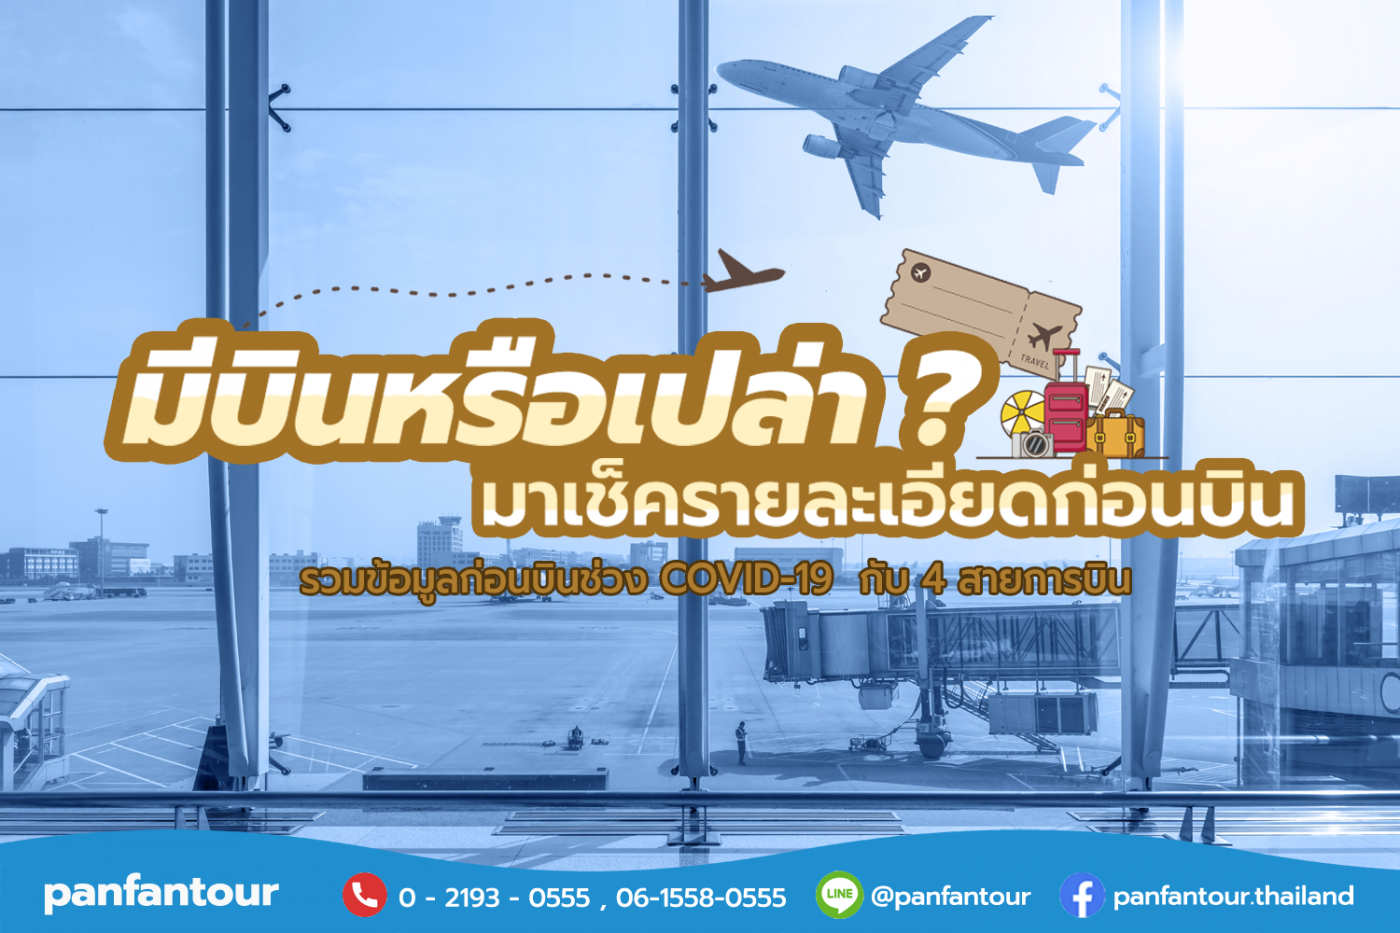 ชัวร์ก่อนบิน - Bangkok Airways